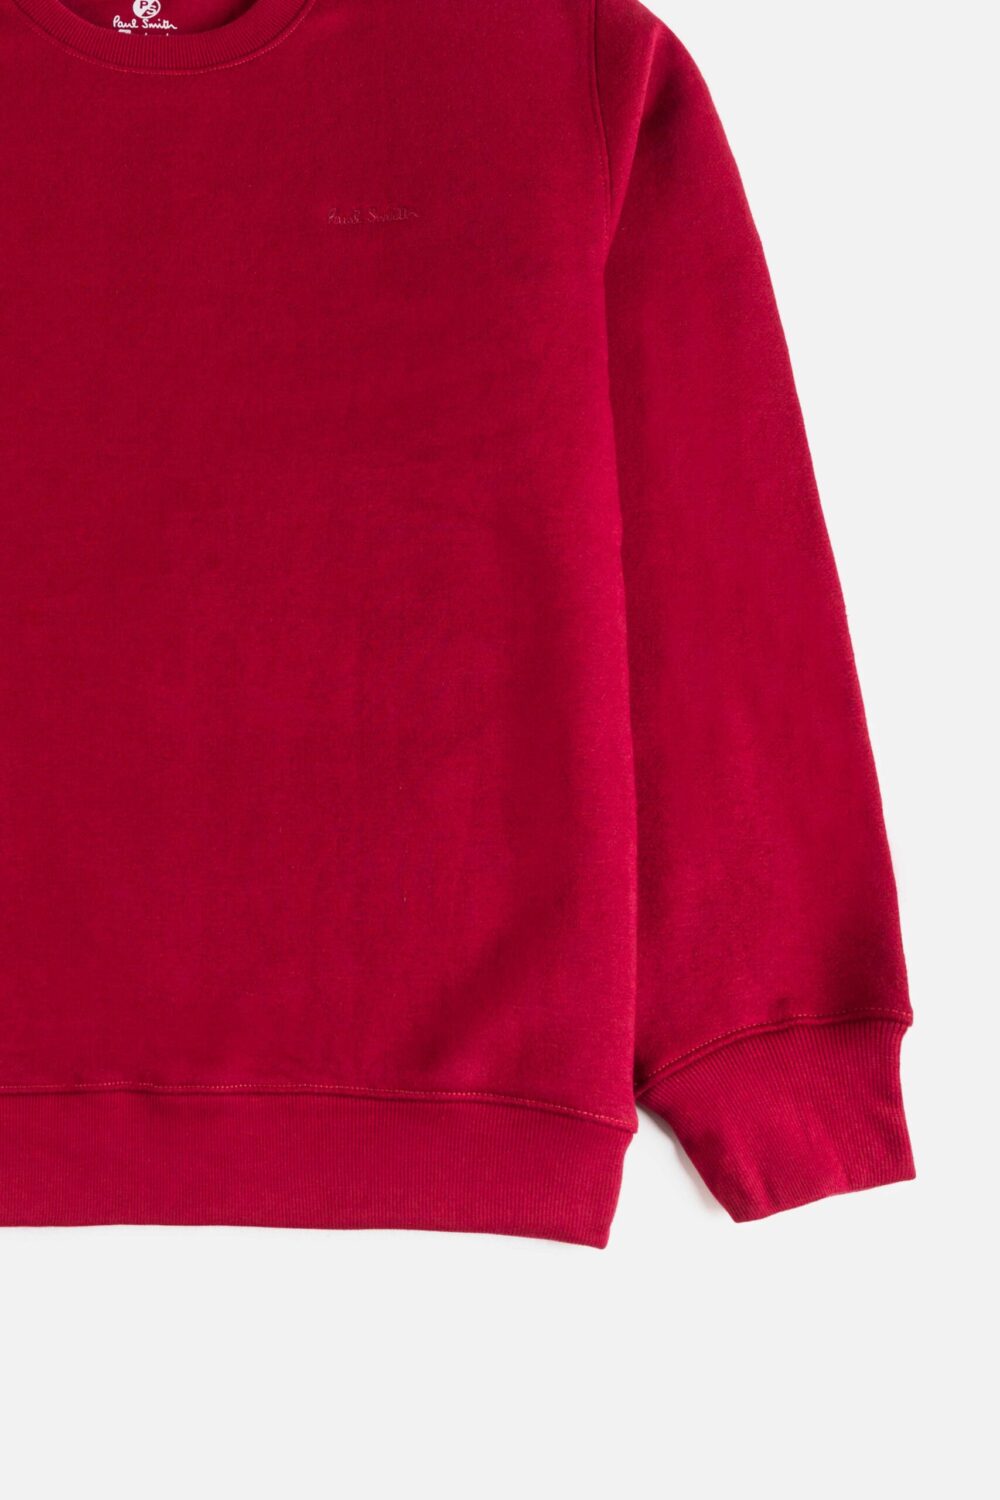 Paul Smith Original Premium Fleece Sweatshirt – Maroon